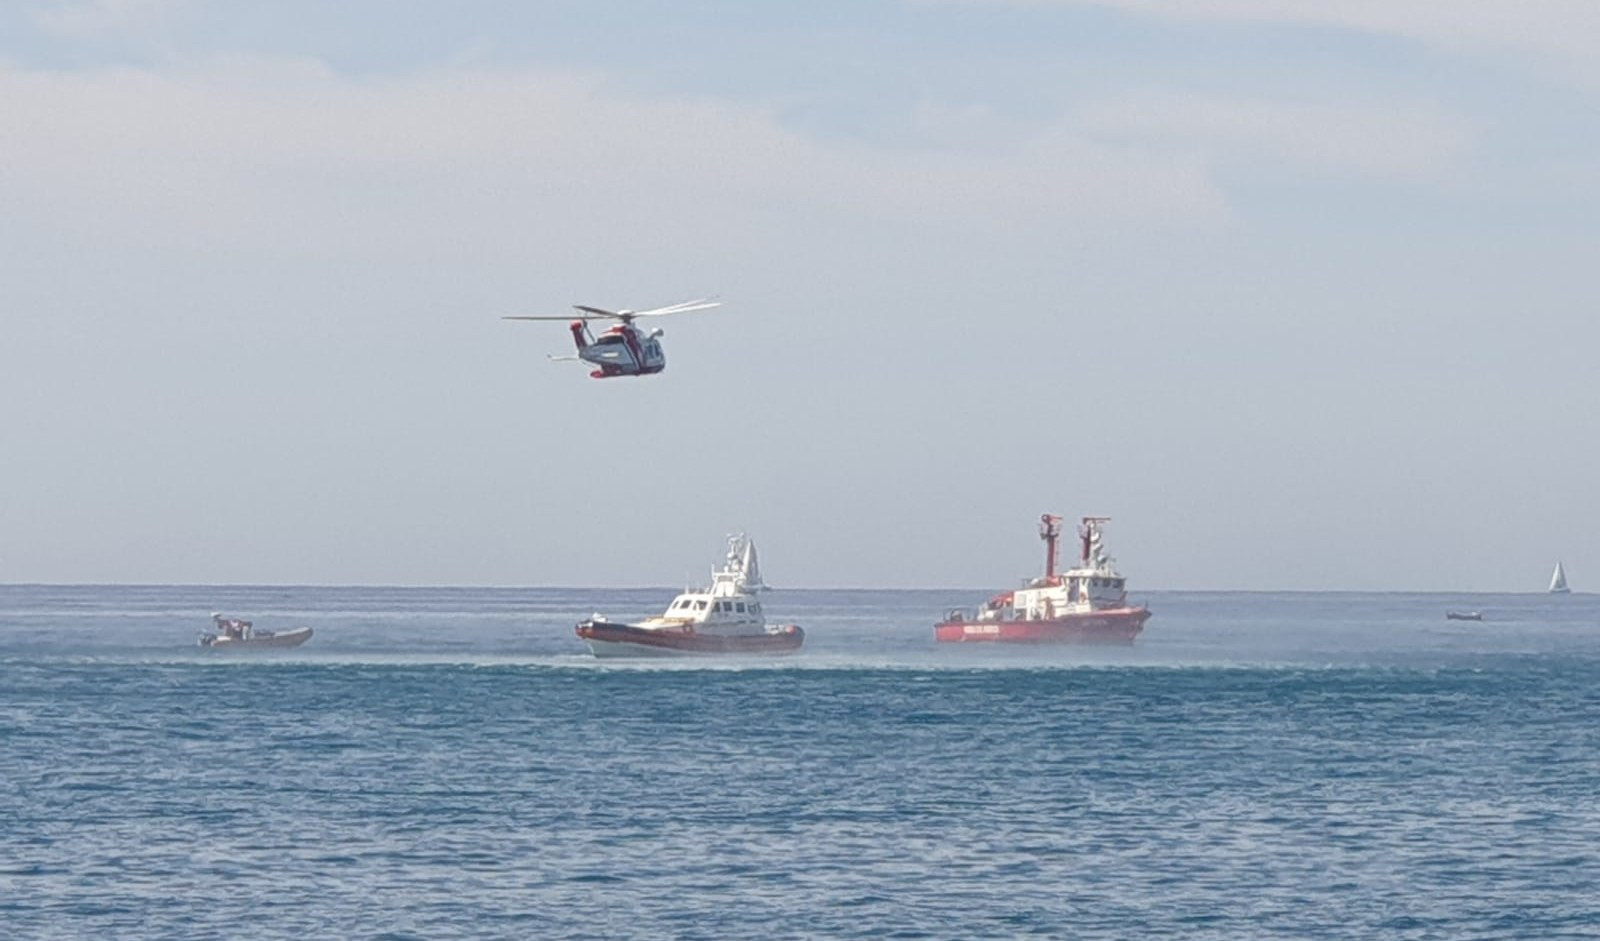 La Guardia Costiera in mare a Genova, ma è una esercitazione per un incidente aereo